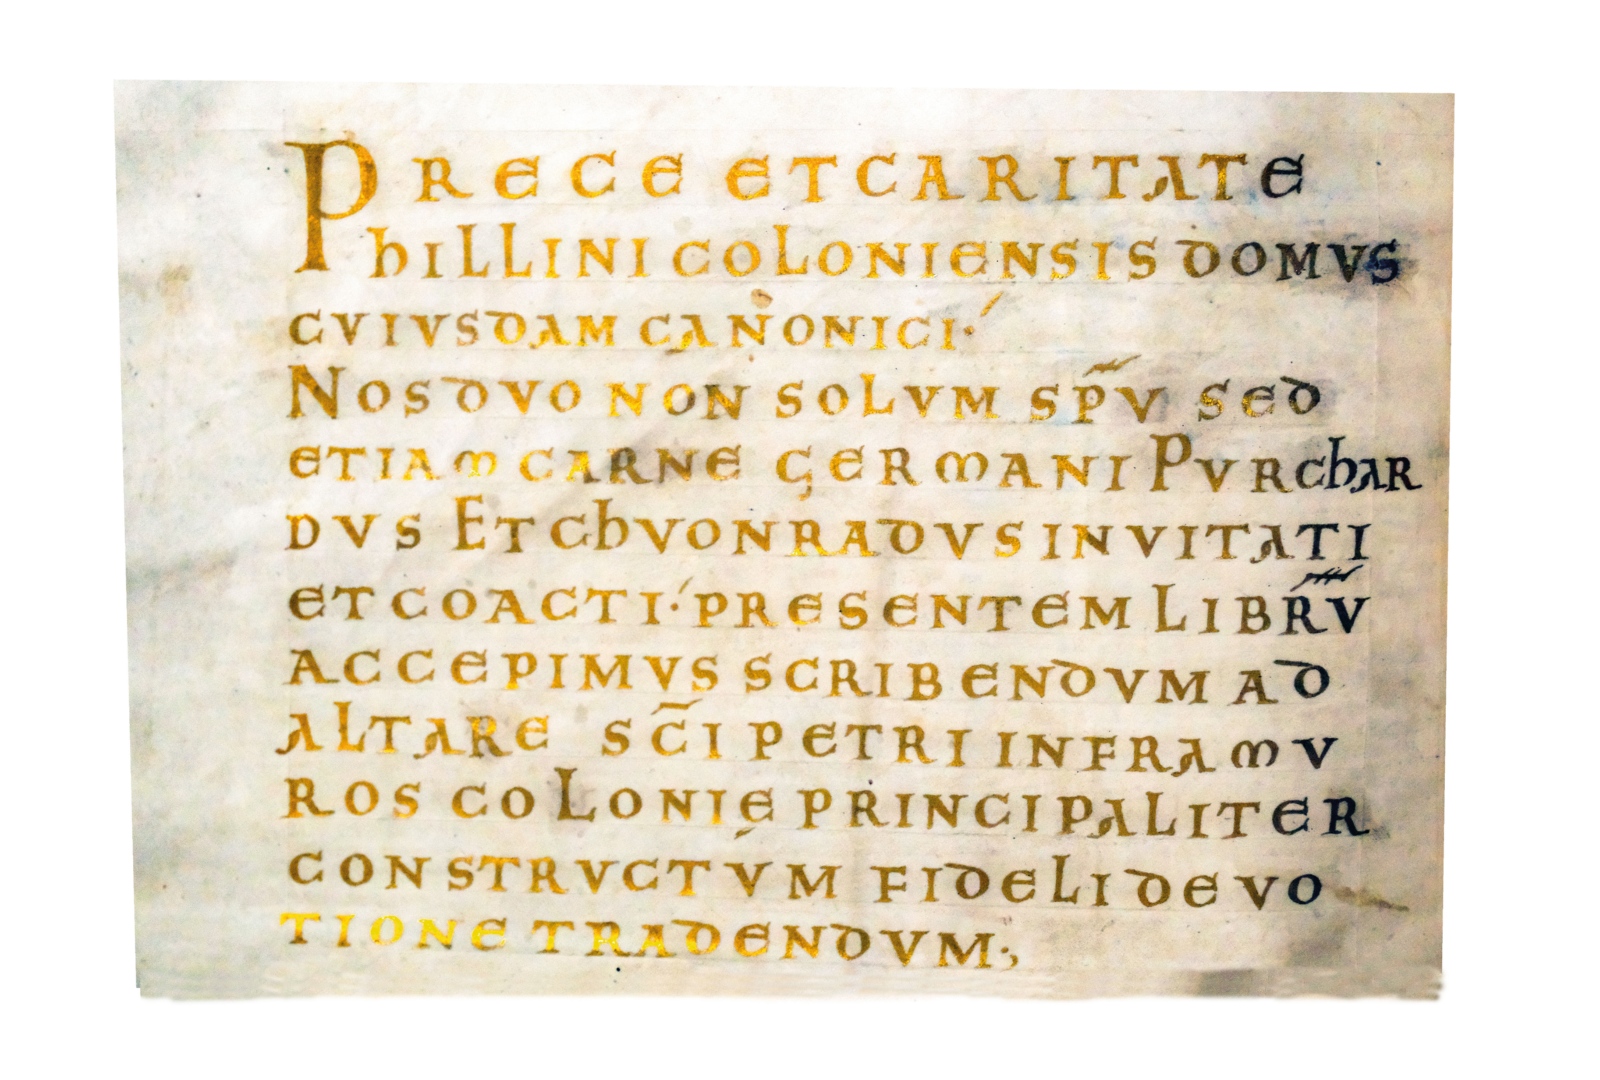 Der Schreiber und der Buchmaler, Chuonradus und Purchardus, haben sich nicht nur mit ihrem Namen, sondern auch mit Angaben zu ihrer Person auf einer Seite des Codex in goldenen Lettern verewigt.